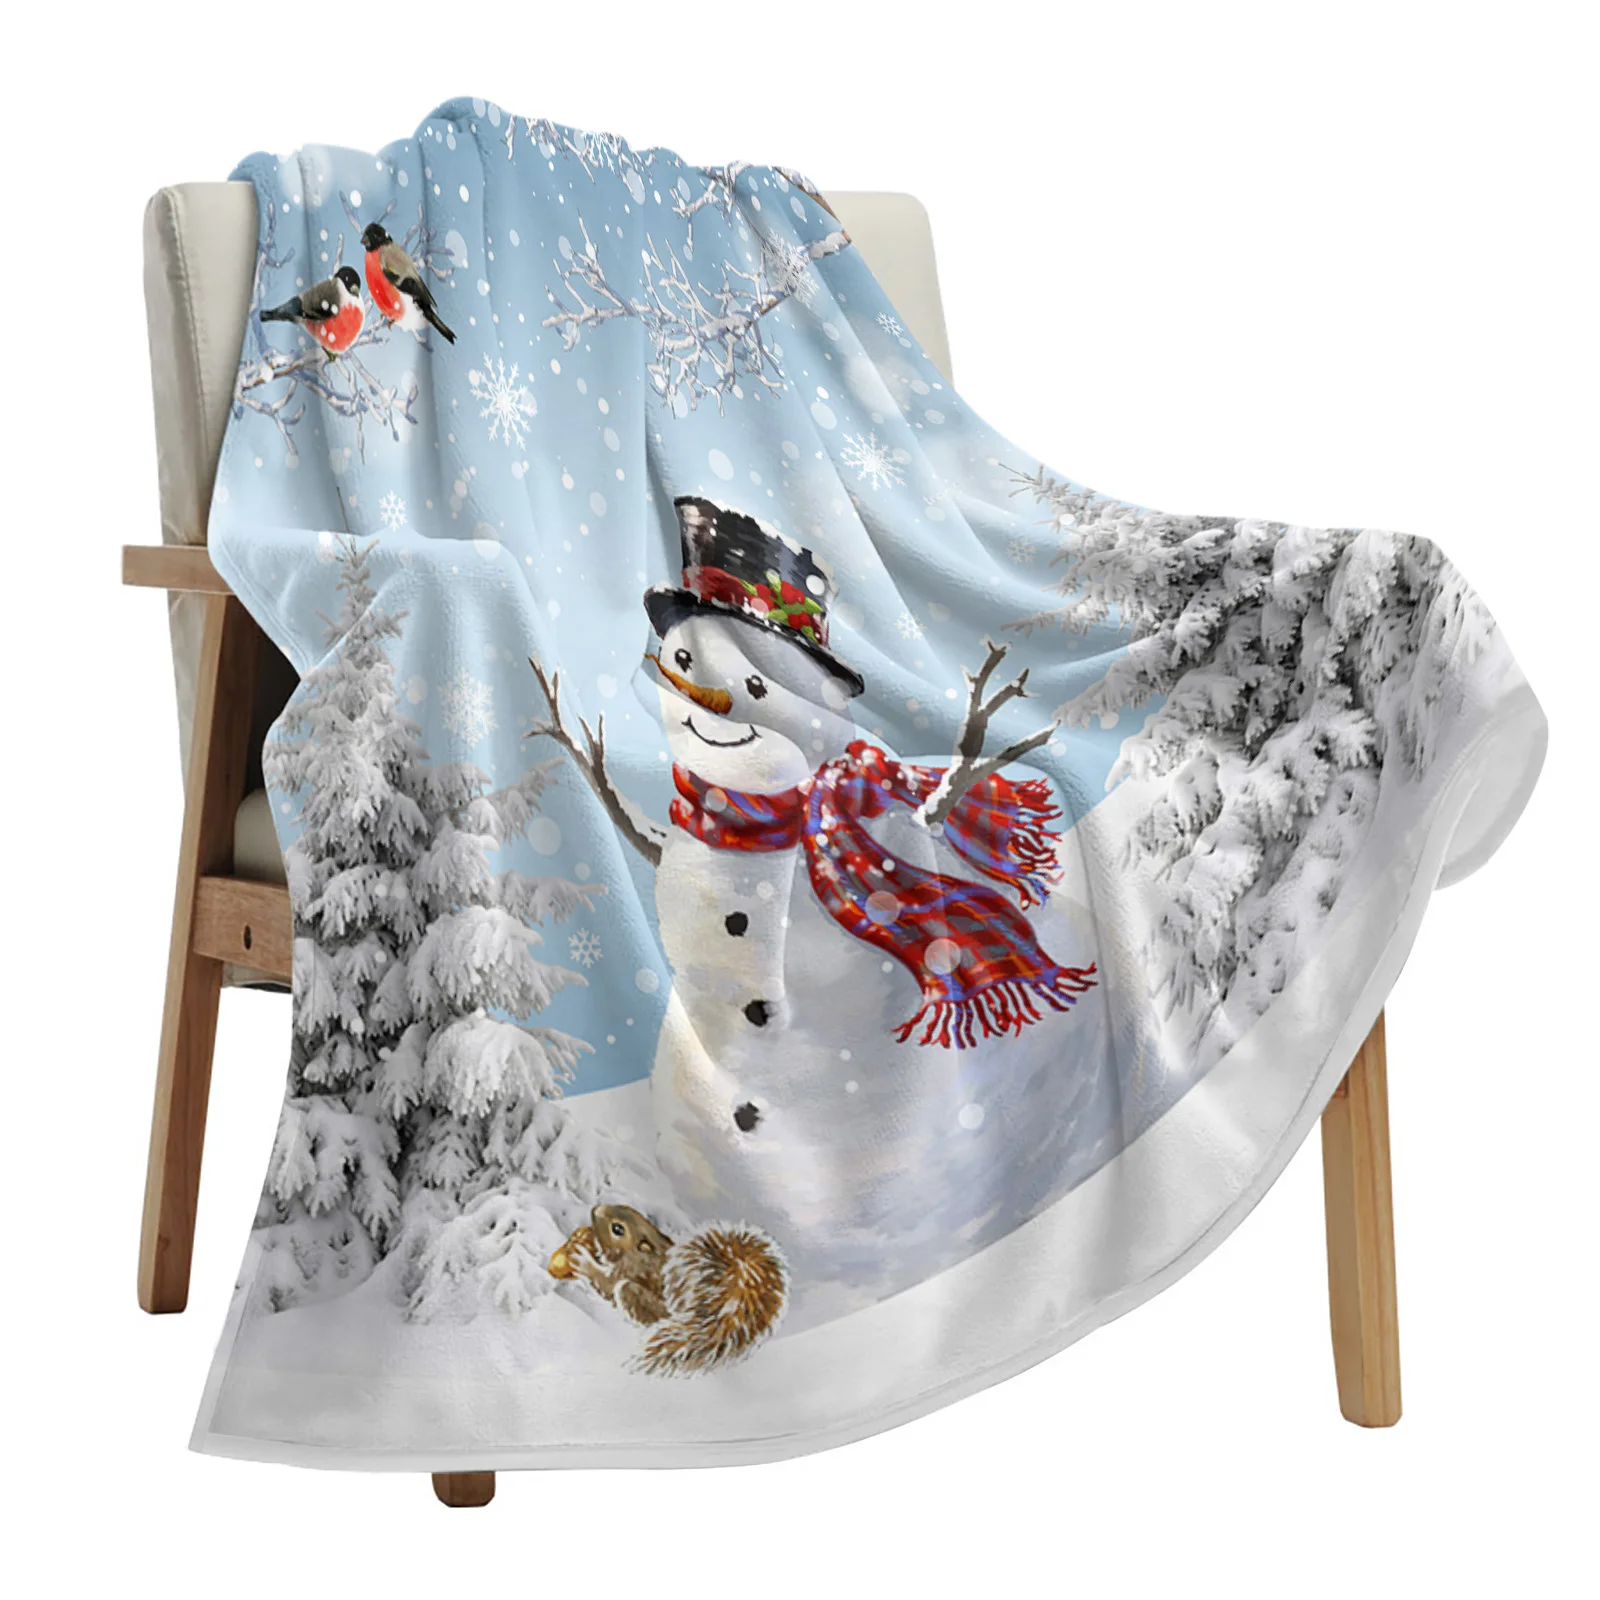 

Рождественское одеяло в виде снеговика, снежинки, искусственное одеяло, мягкое плюшевое теплое диванное одеяло, праздничные подарки